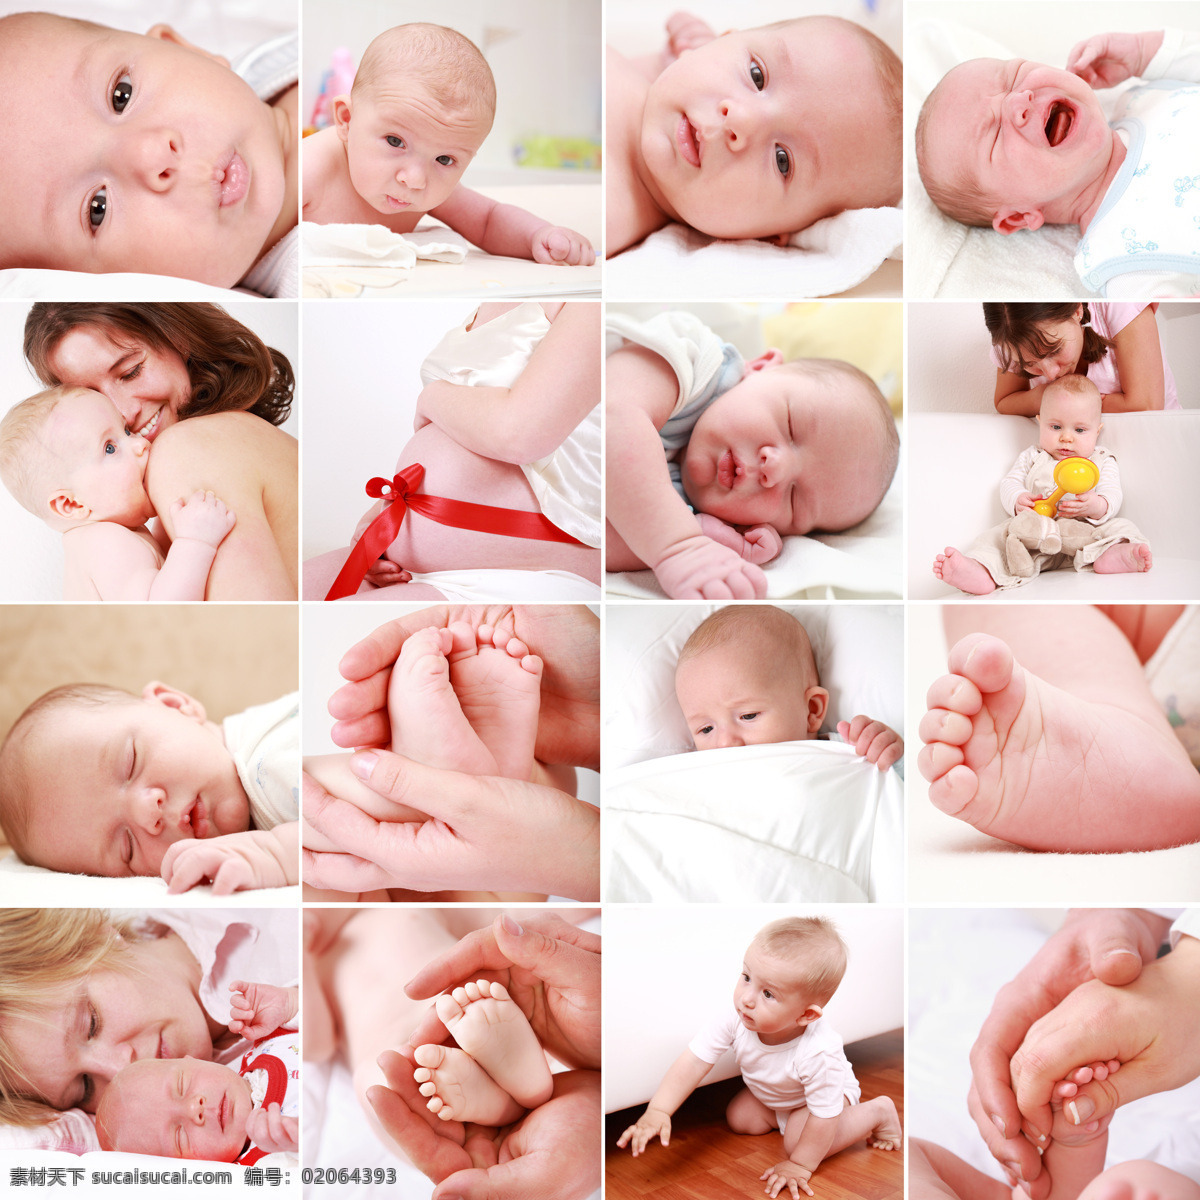 妈妈 宝宝 图片集 母亲 母爱 亲情 baby 可爱 孩子 小孩 婴儿 健康宝宝 儿童幼儿 宝宝图片 人物图片